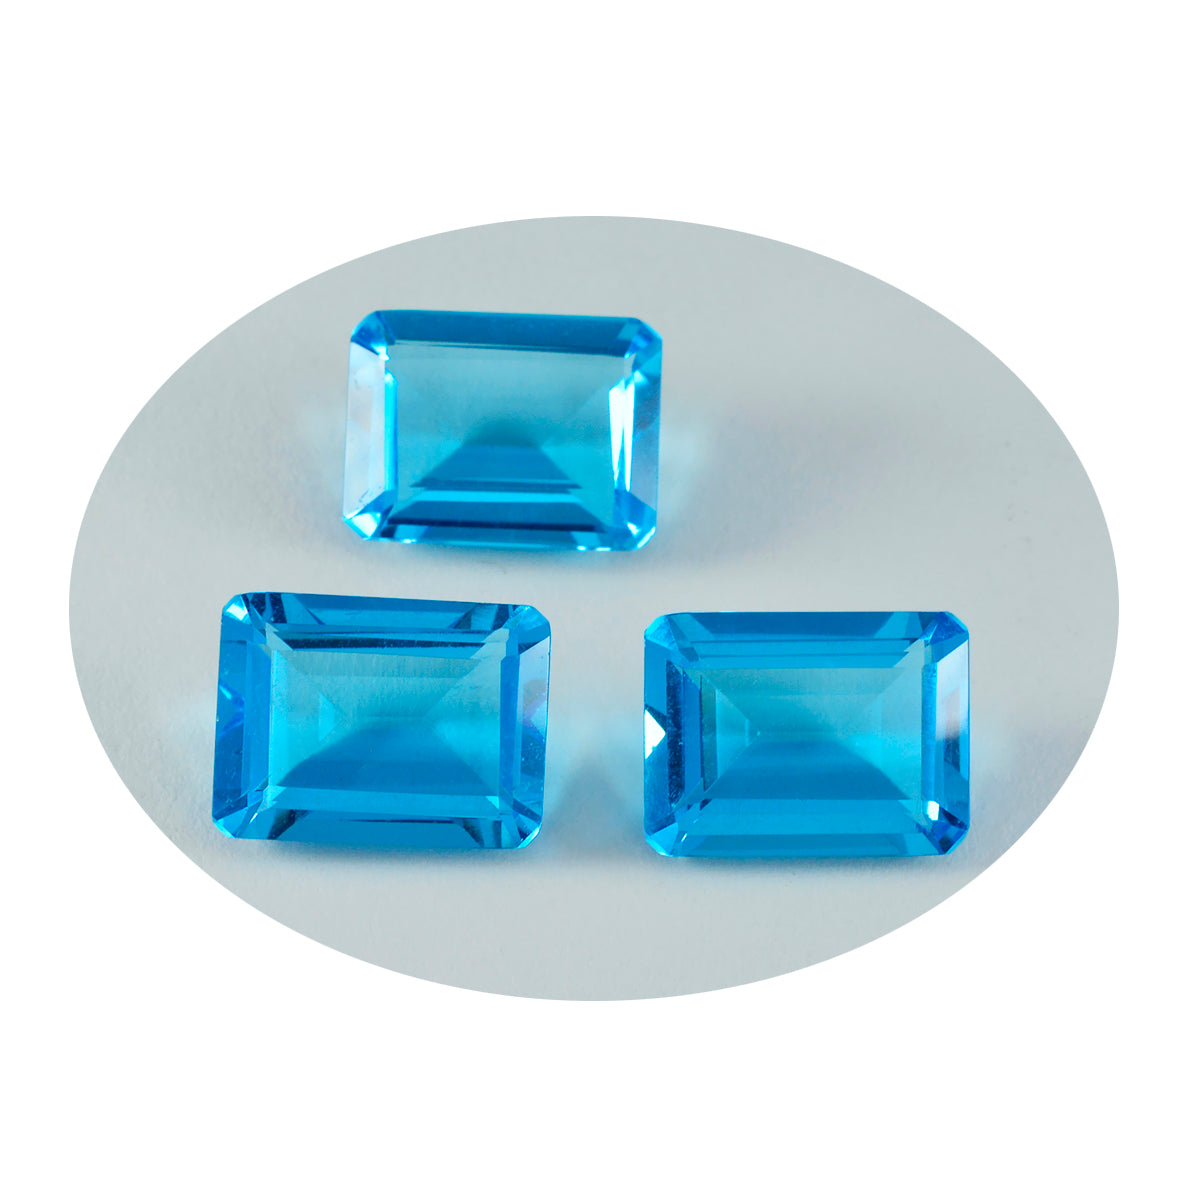 riyogems 1шт синий топаз cz граненый 12x16 мм восьмиугольной формы, красивый качественный драгоценный камень